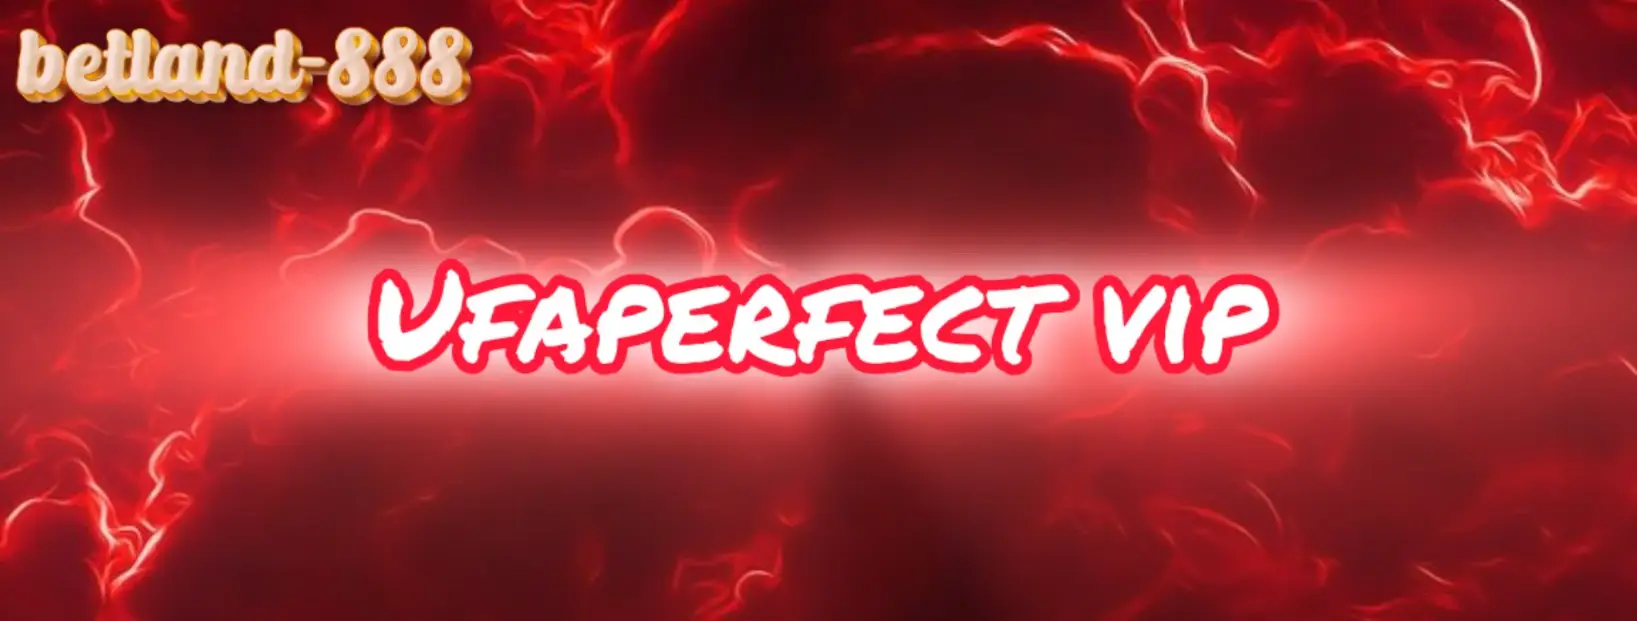 เข้าร่วม Ufaperfect vip สล็อตคาสิโนที่ทันสมัยและน่าตื่นเต้น